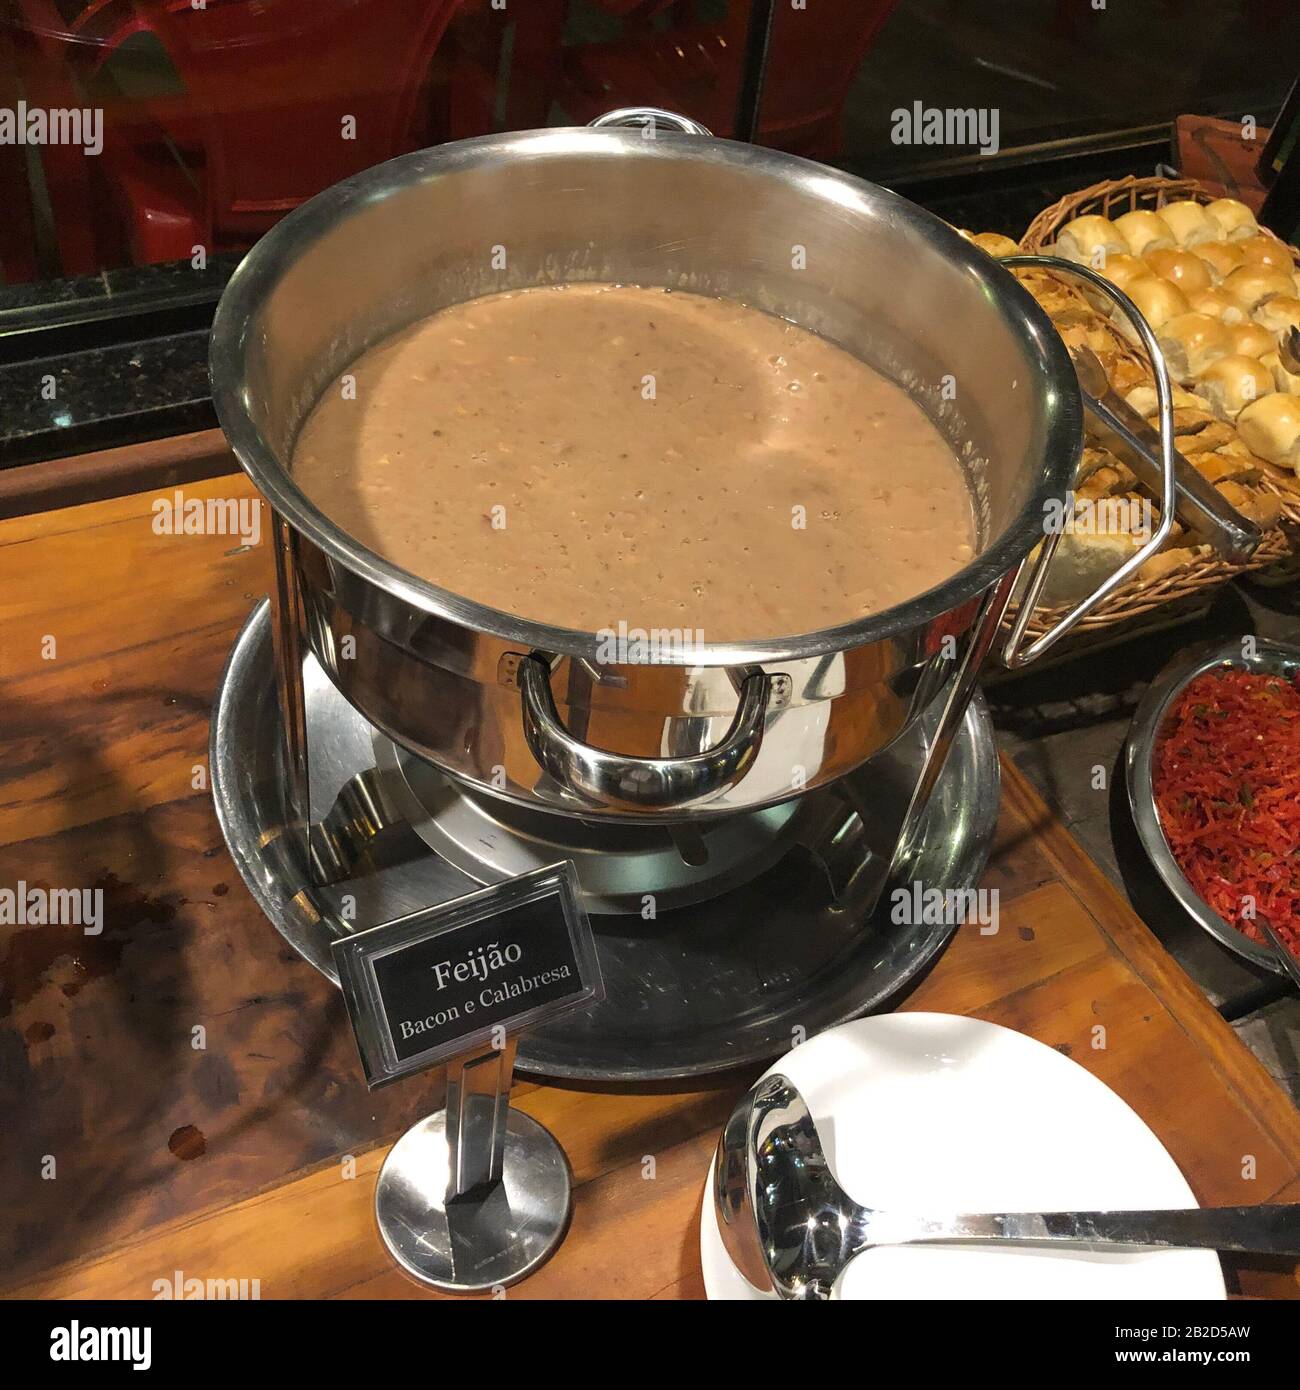 Foto der Suppe, die in einem Restaurant serviert wird. Farbbild, im Restaurant, Standpunkt des Kunden. Stockfoto